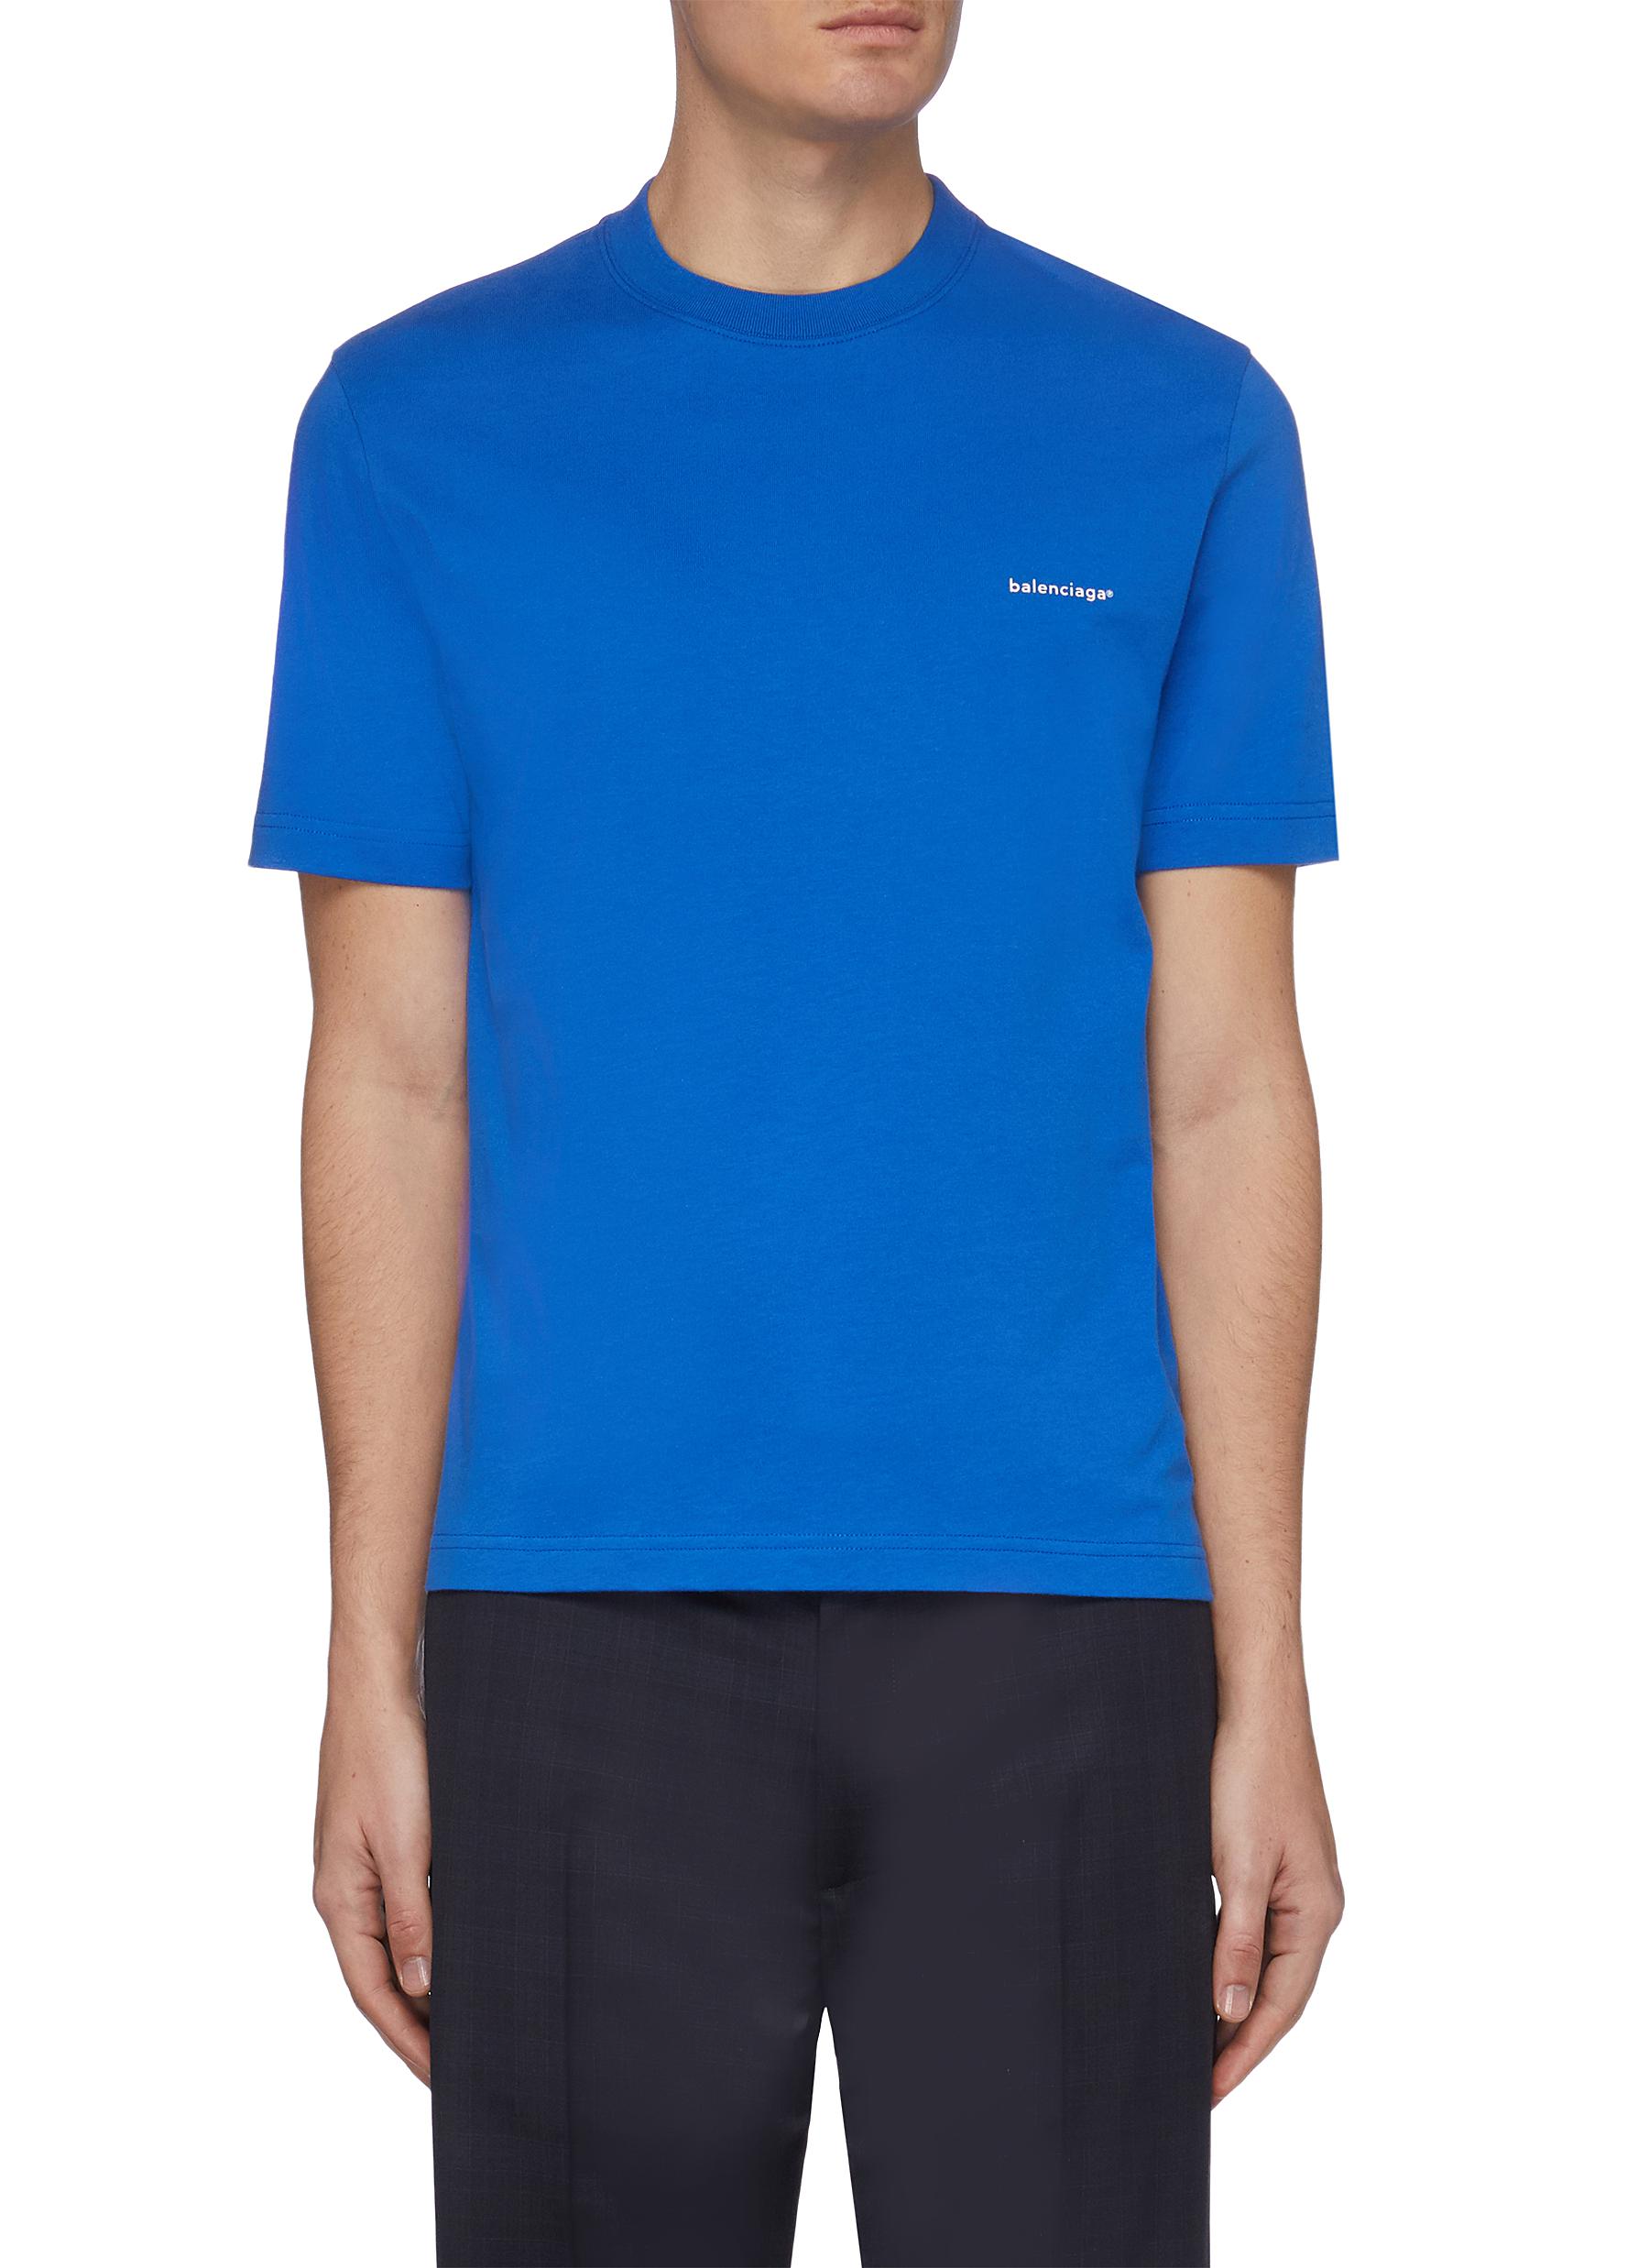 Balenciaga 'copyright' Logo Embroidered T-shirt In Blue | ModeSens